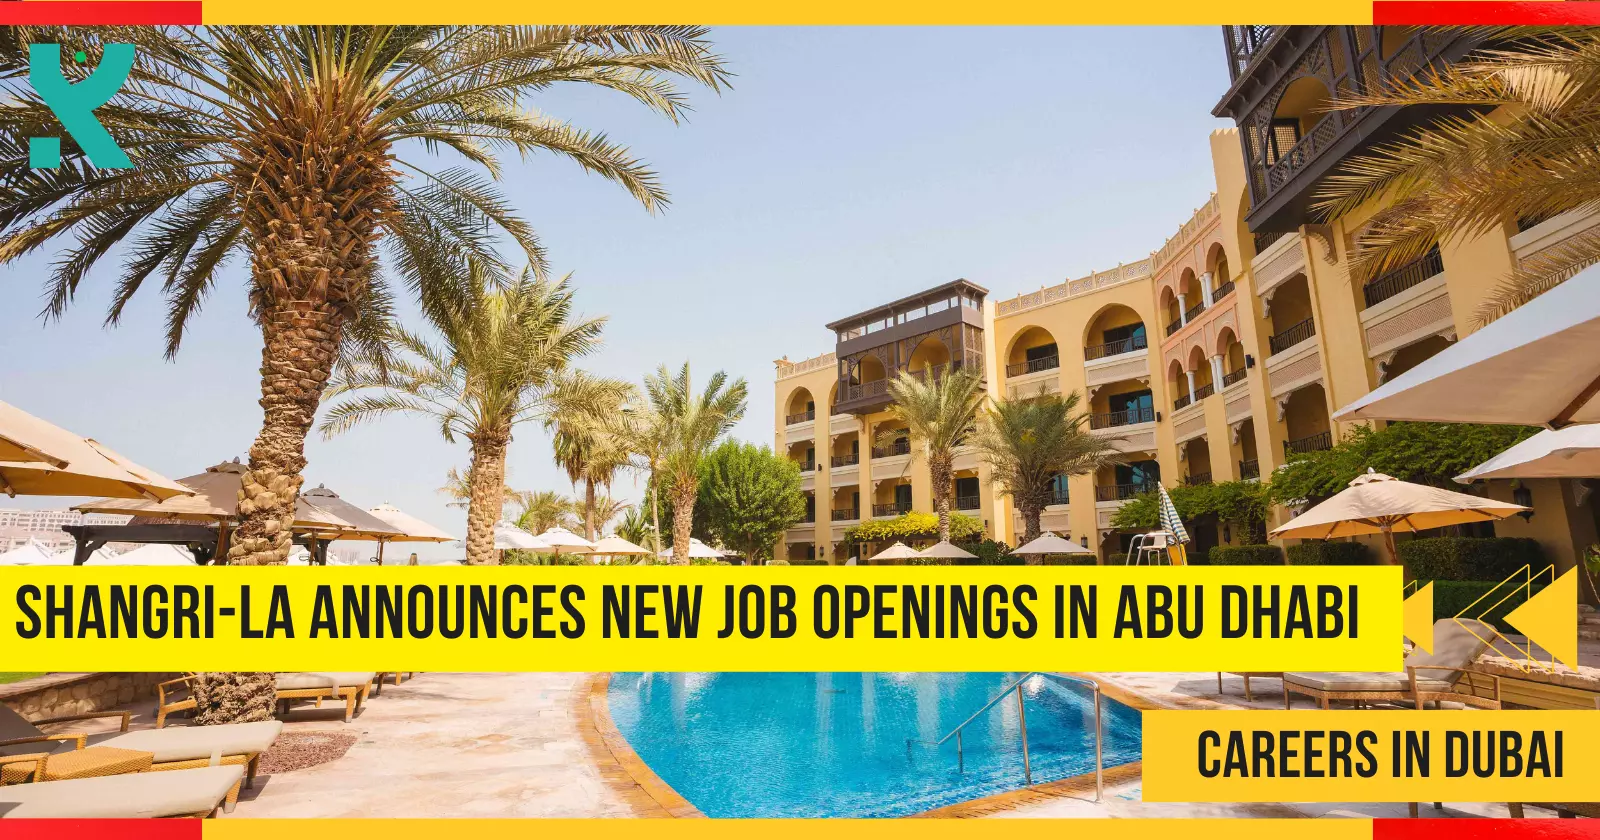 Shangri-La Announces New Job Openings in Abu Dhabi